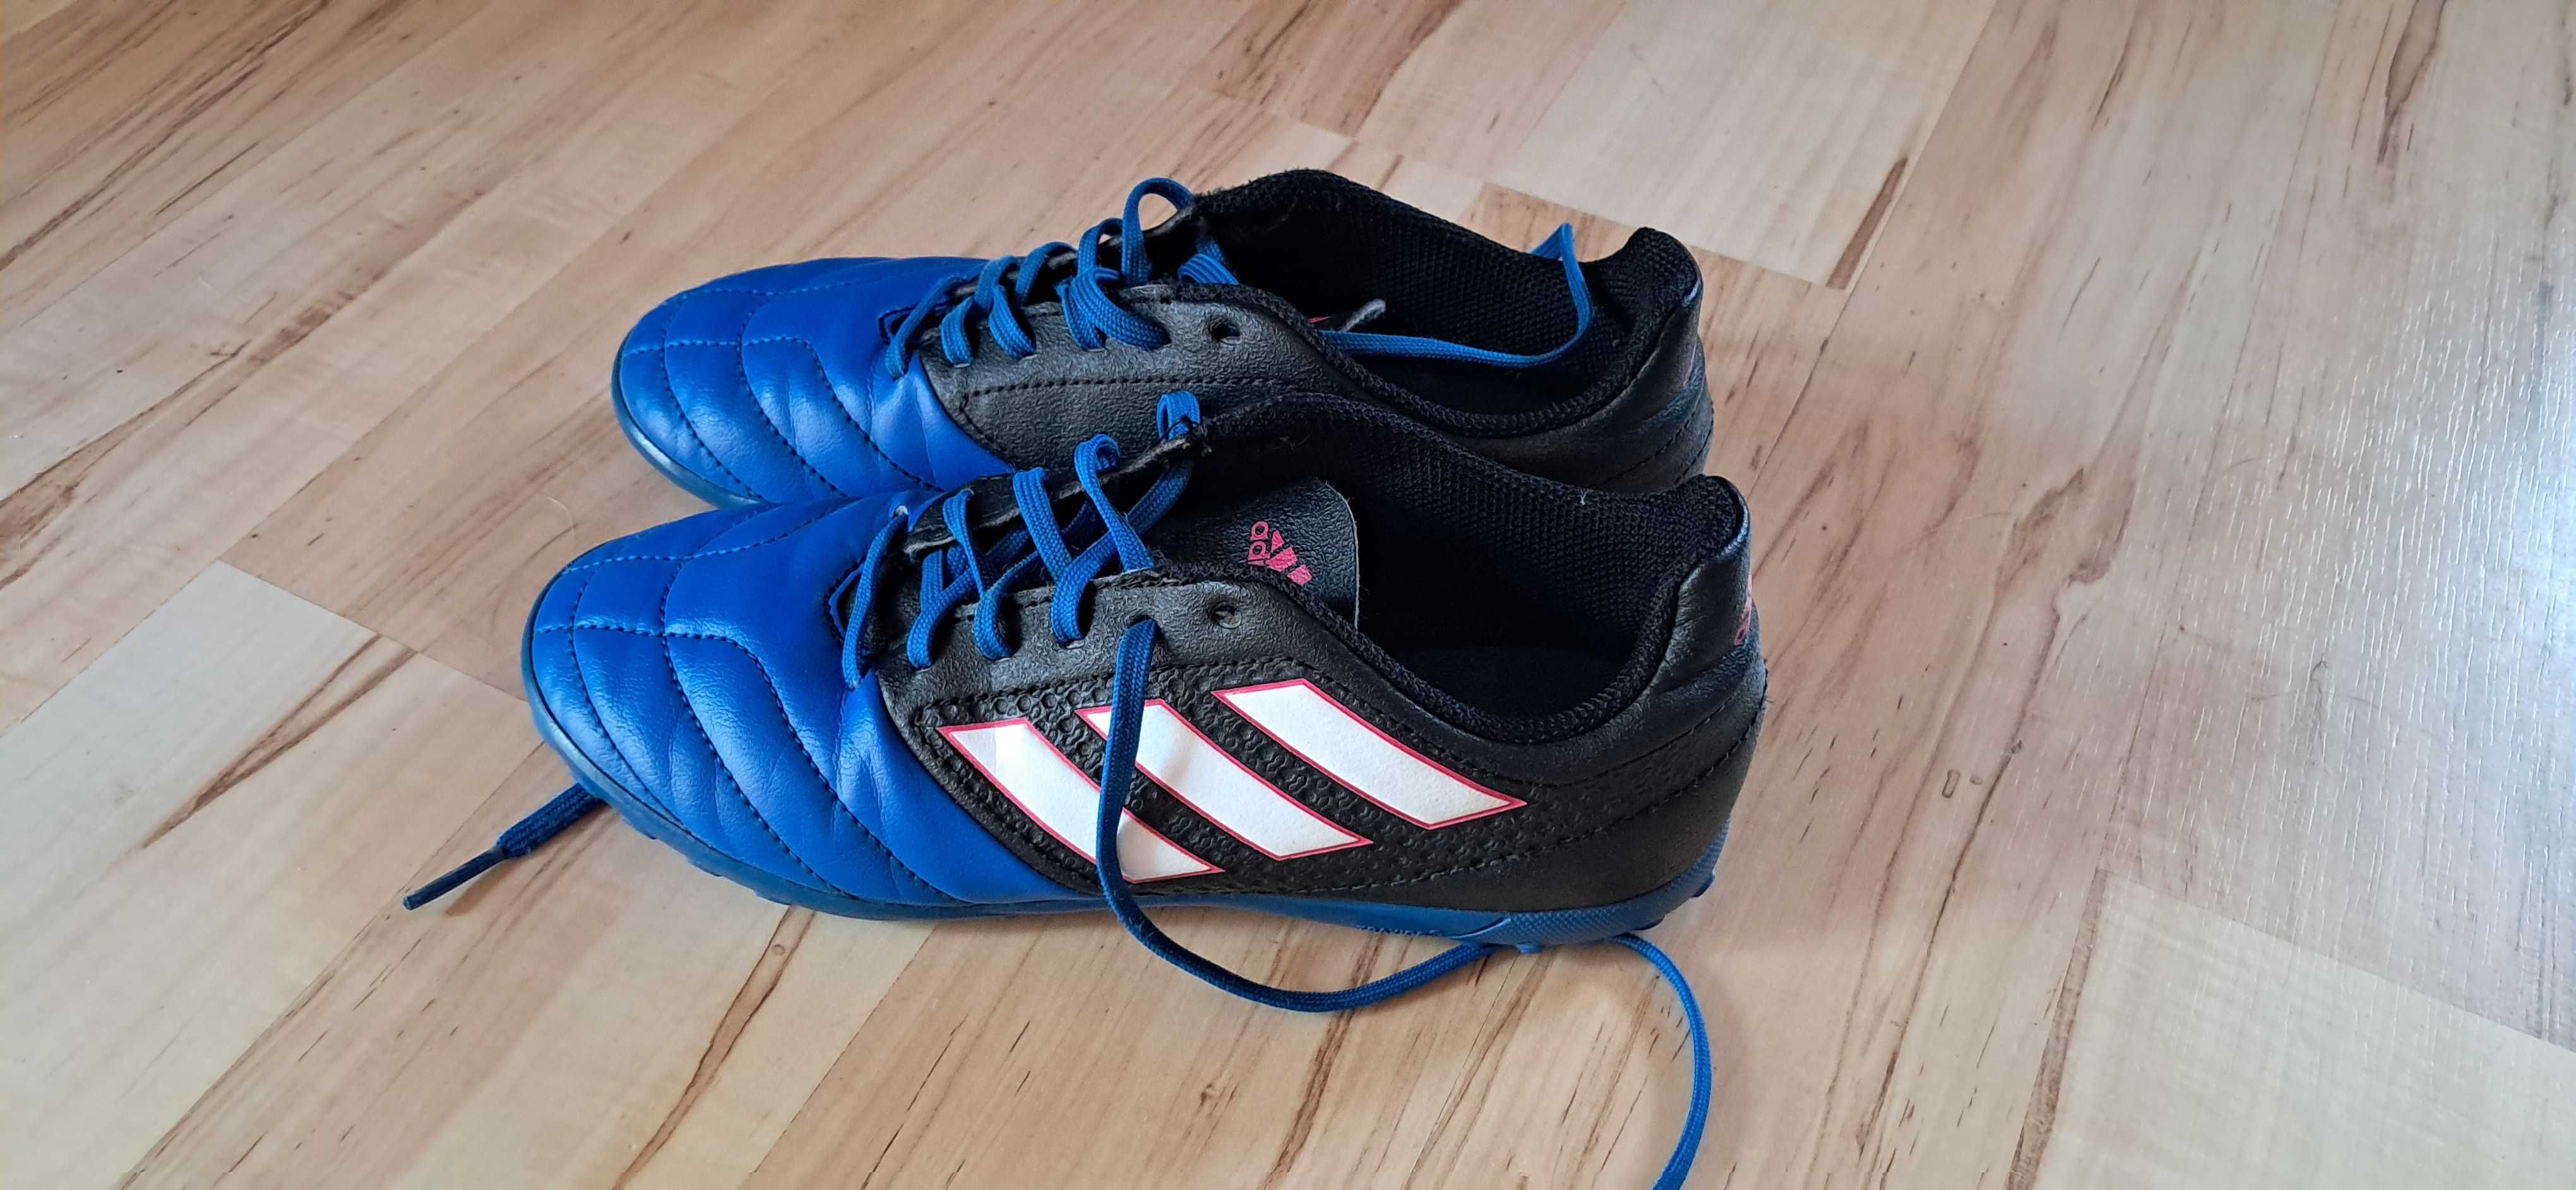 Adidas buty piłkarskie dla chłopca rozm.35,5